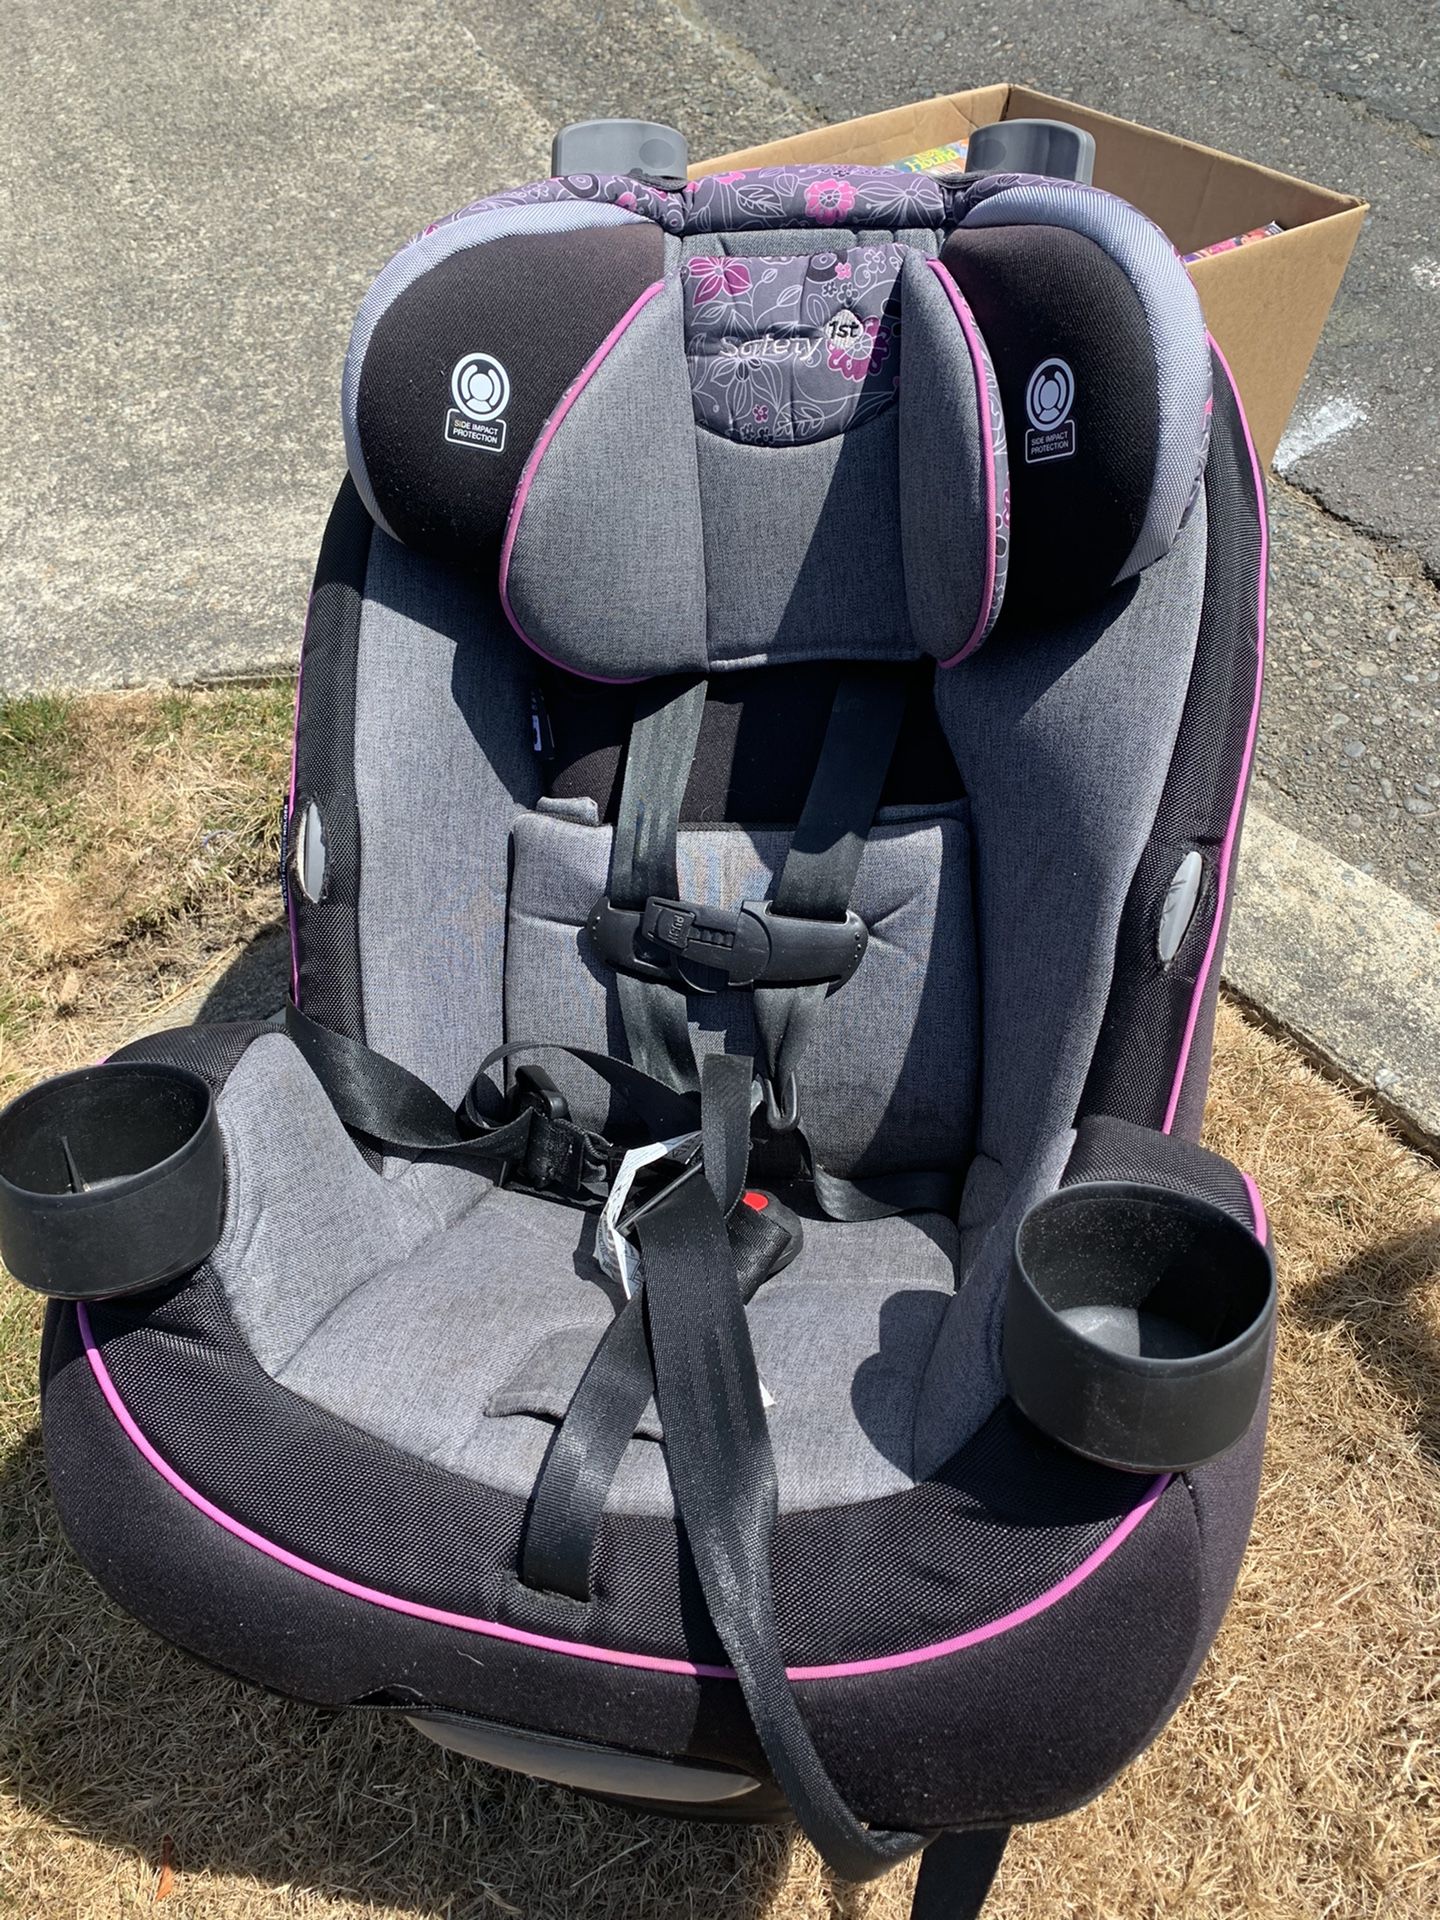 FREE. Baby/toddler car seat